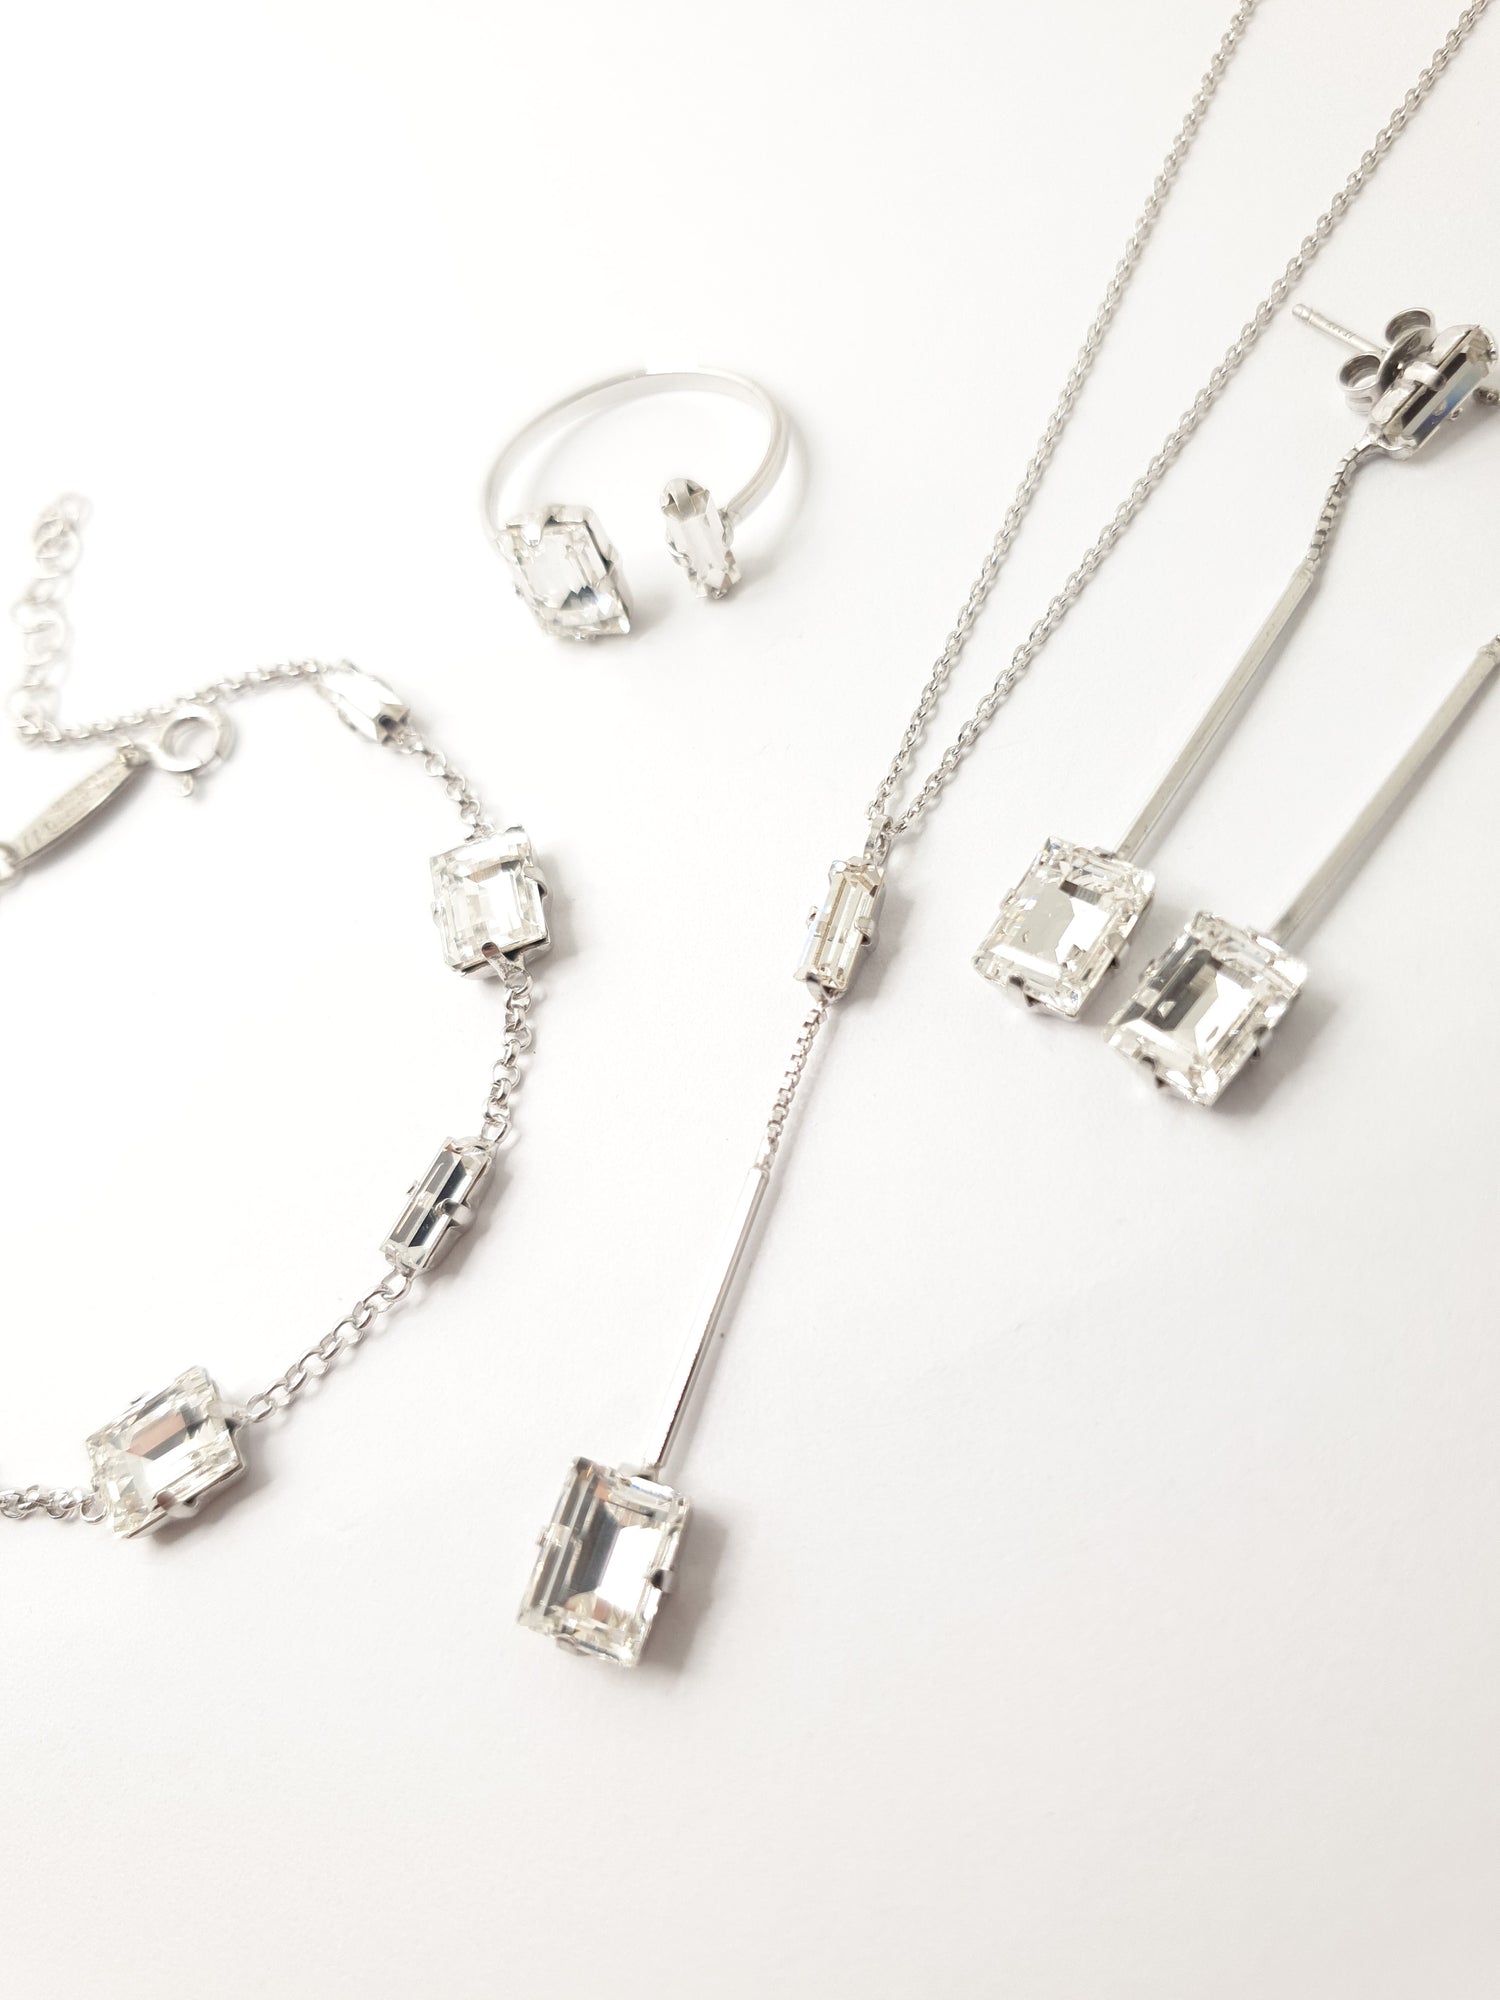 Swarovski Set aus italienischem Silber bestehend aus Armband mit weißen viereckigen Kristallen verziert, Kette mit langem Anhänger mit zwei Kristallen und Hängeohrringe.